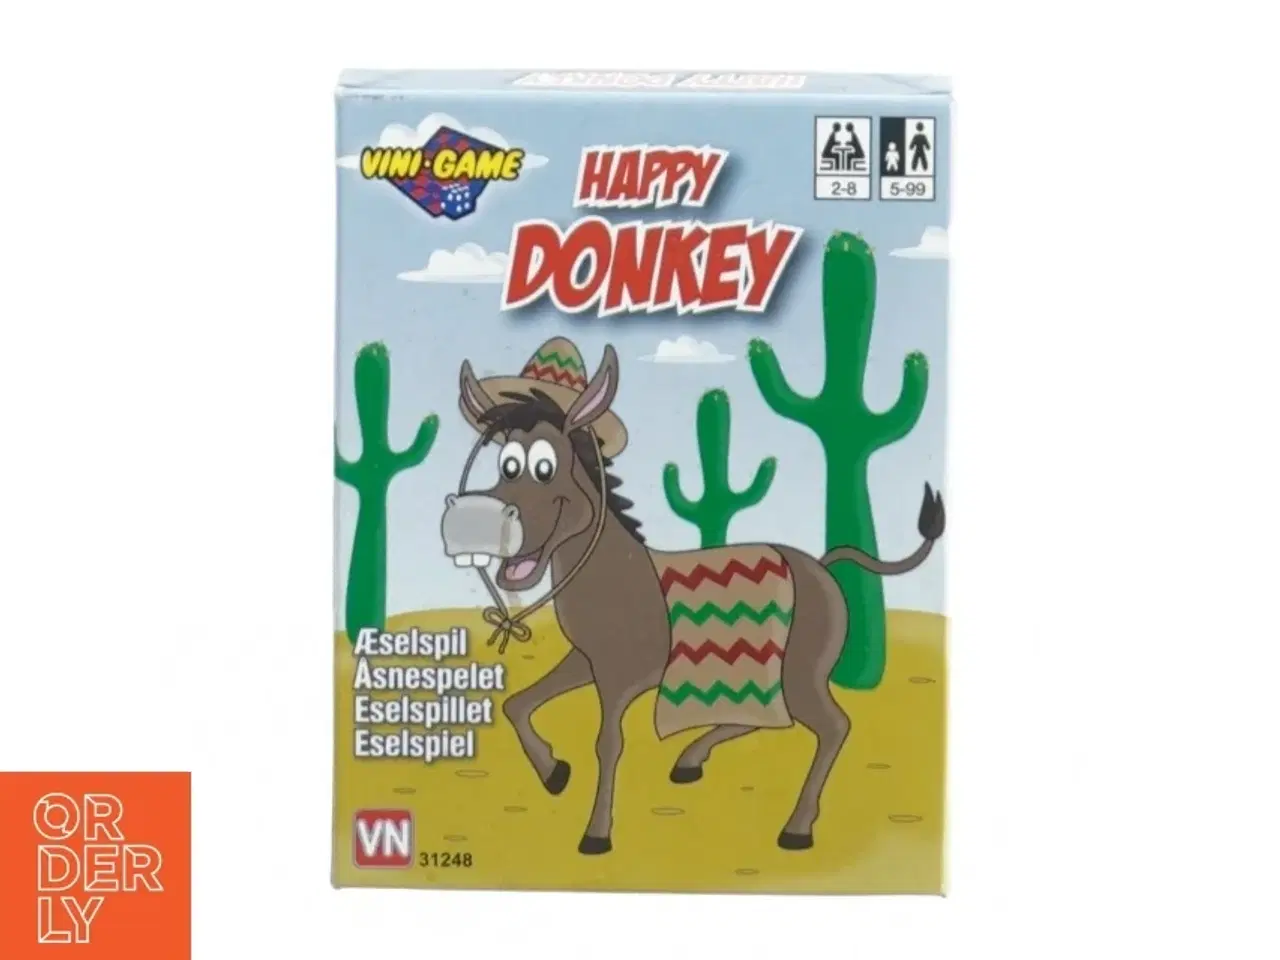 Billede 1 - Happy donkey fra Vini Game